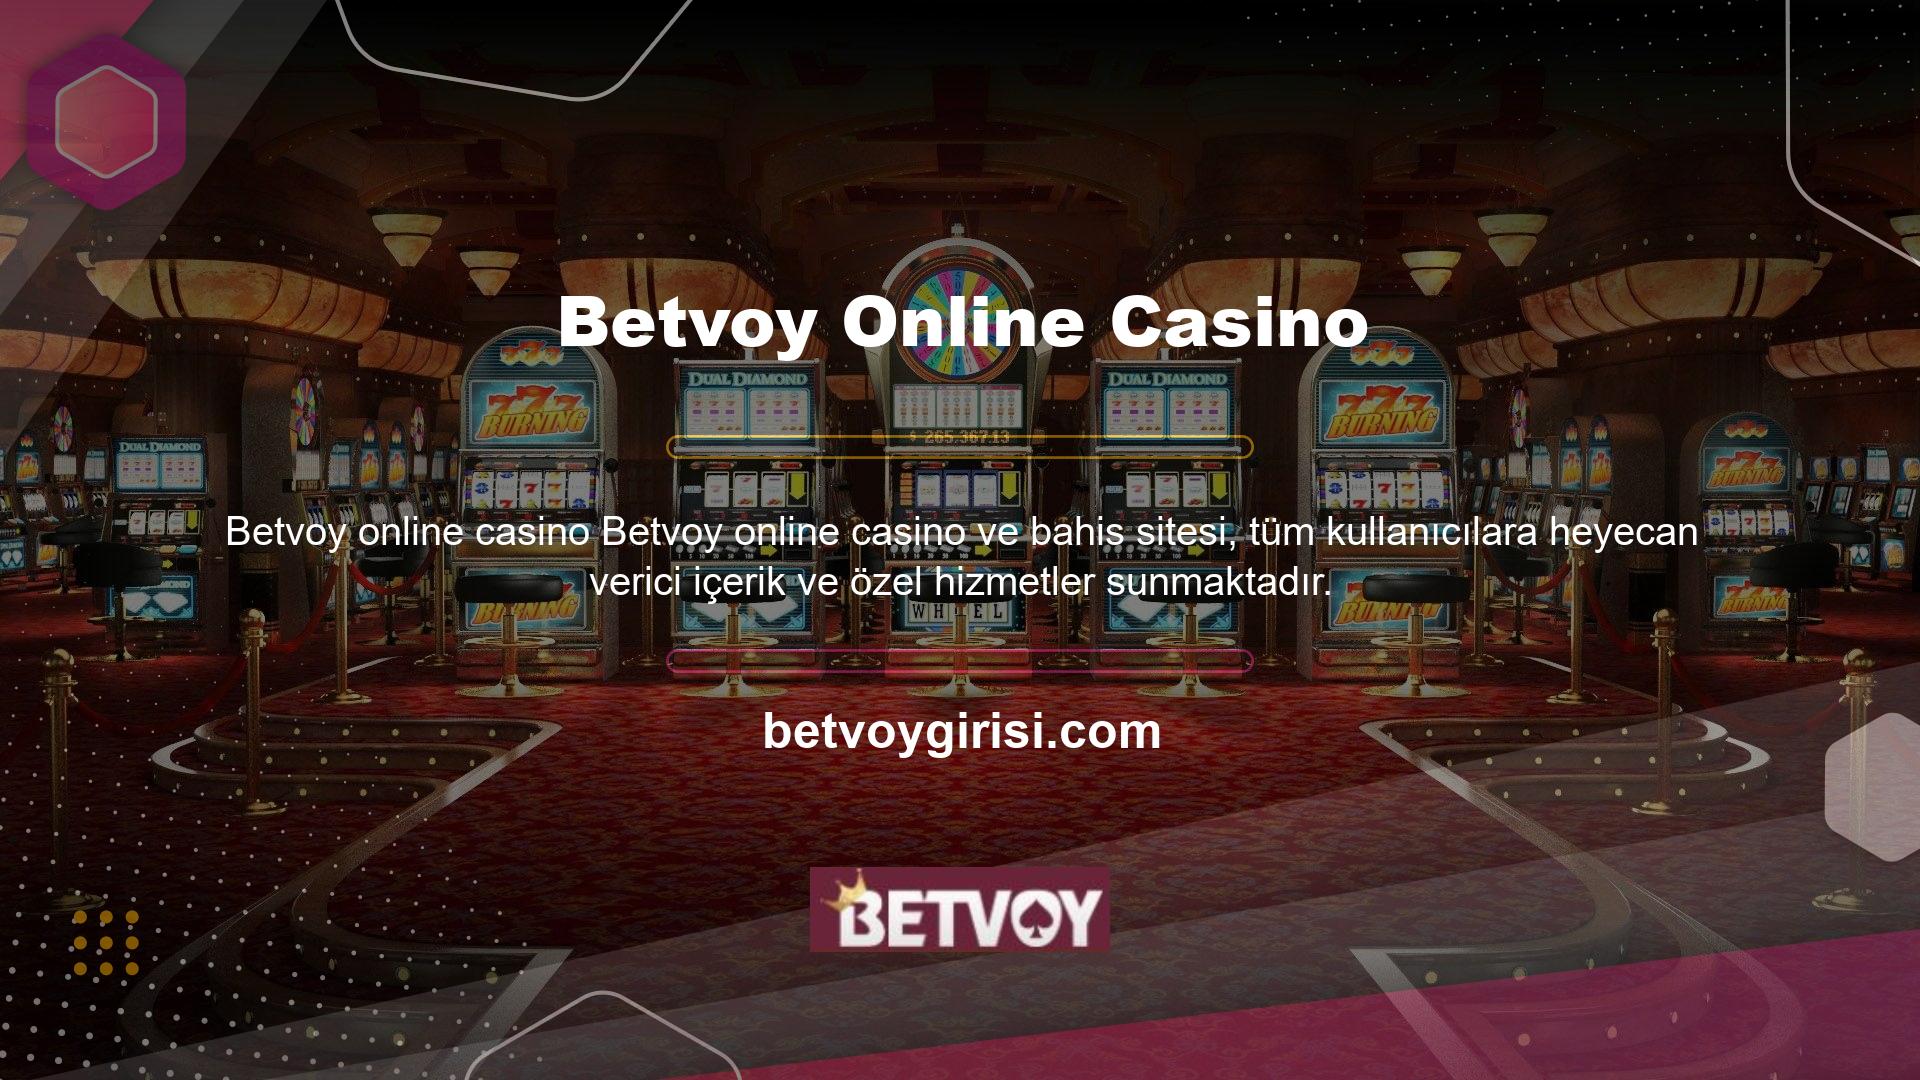 Betvoy, tüm kullanıcılar için spor bahisleri, canlı bahis, casino, canlı casino, sanal oyunlar, tavla, tombala ve daha fazlasını sunar